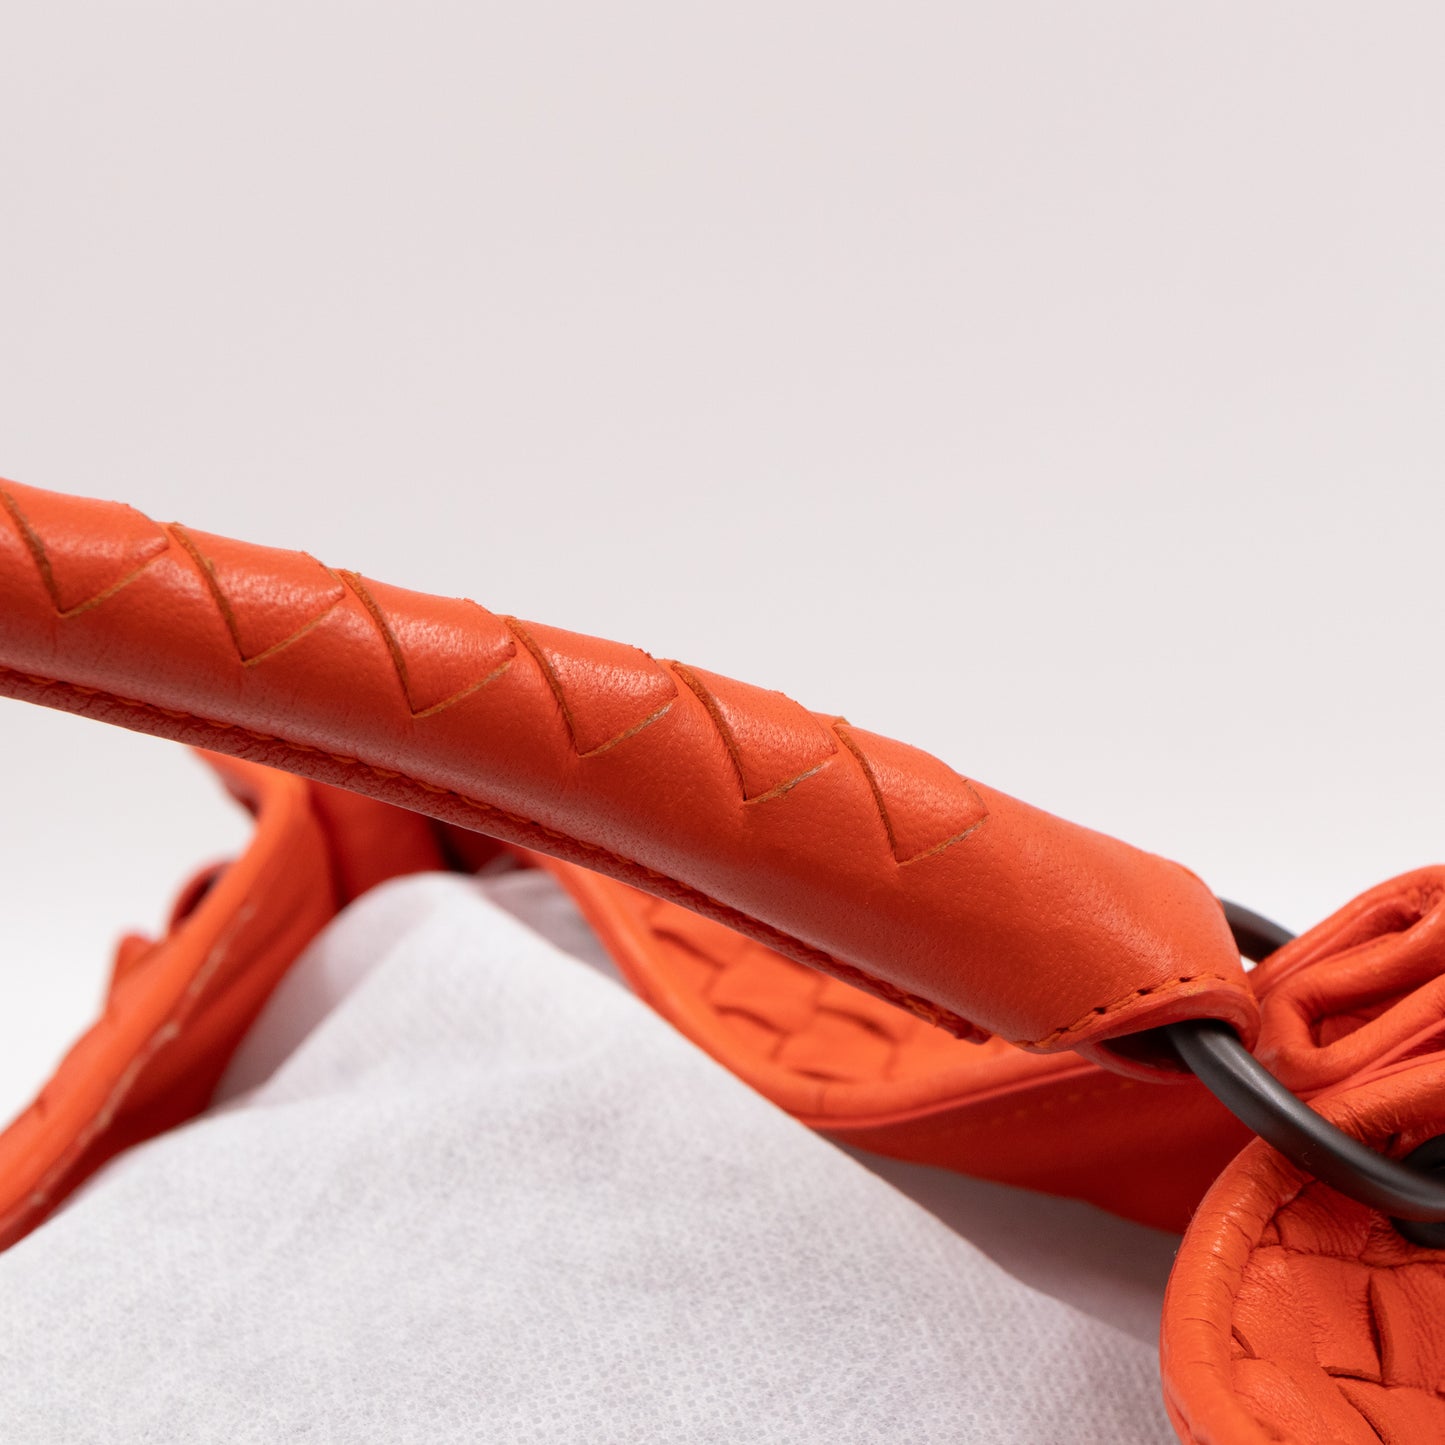 Parachute Bag Intrecciato Orange Leather